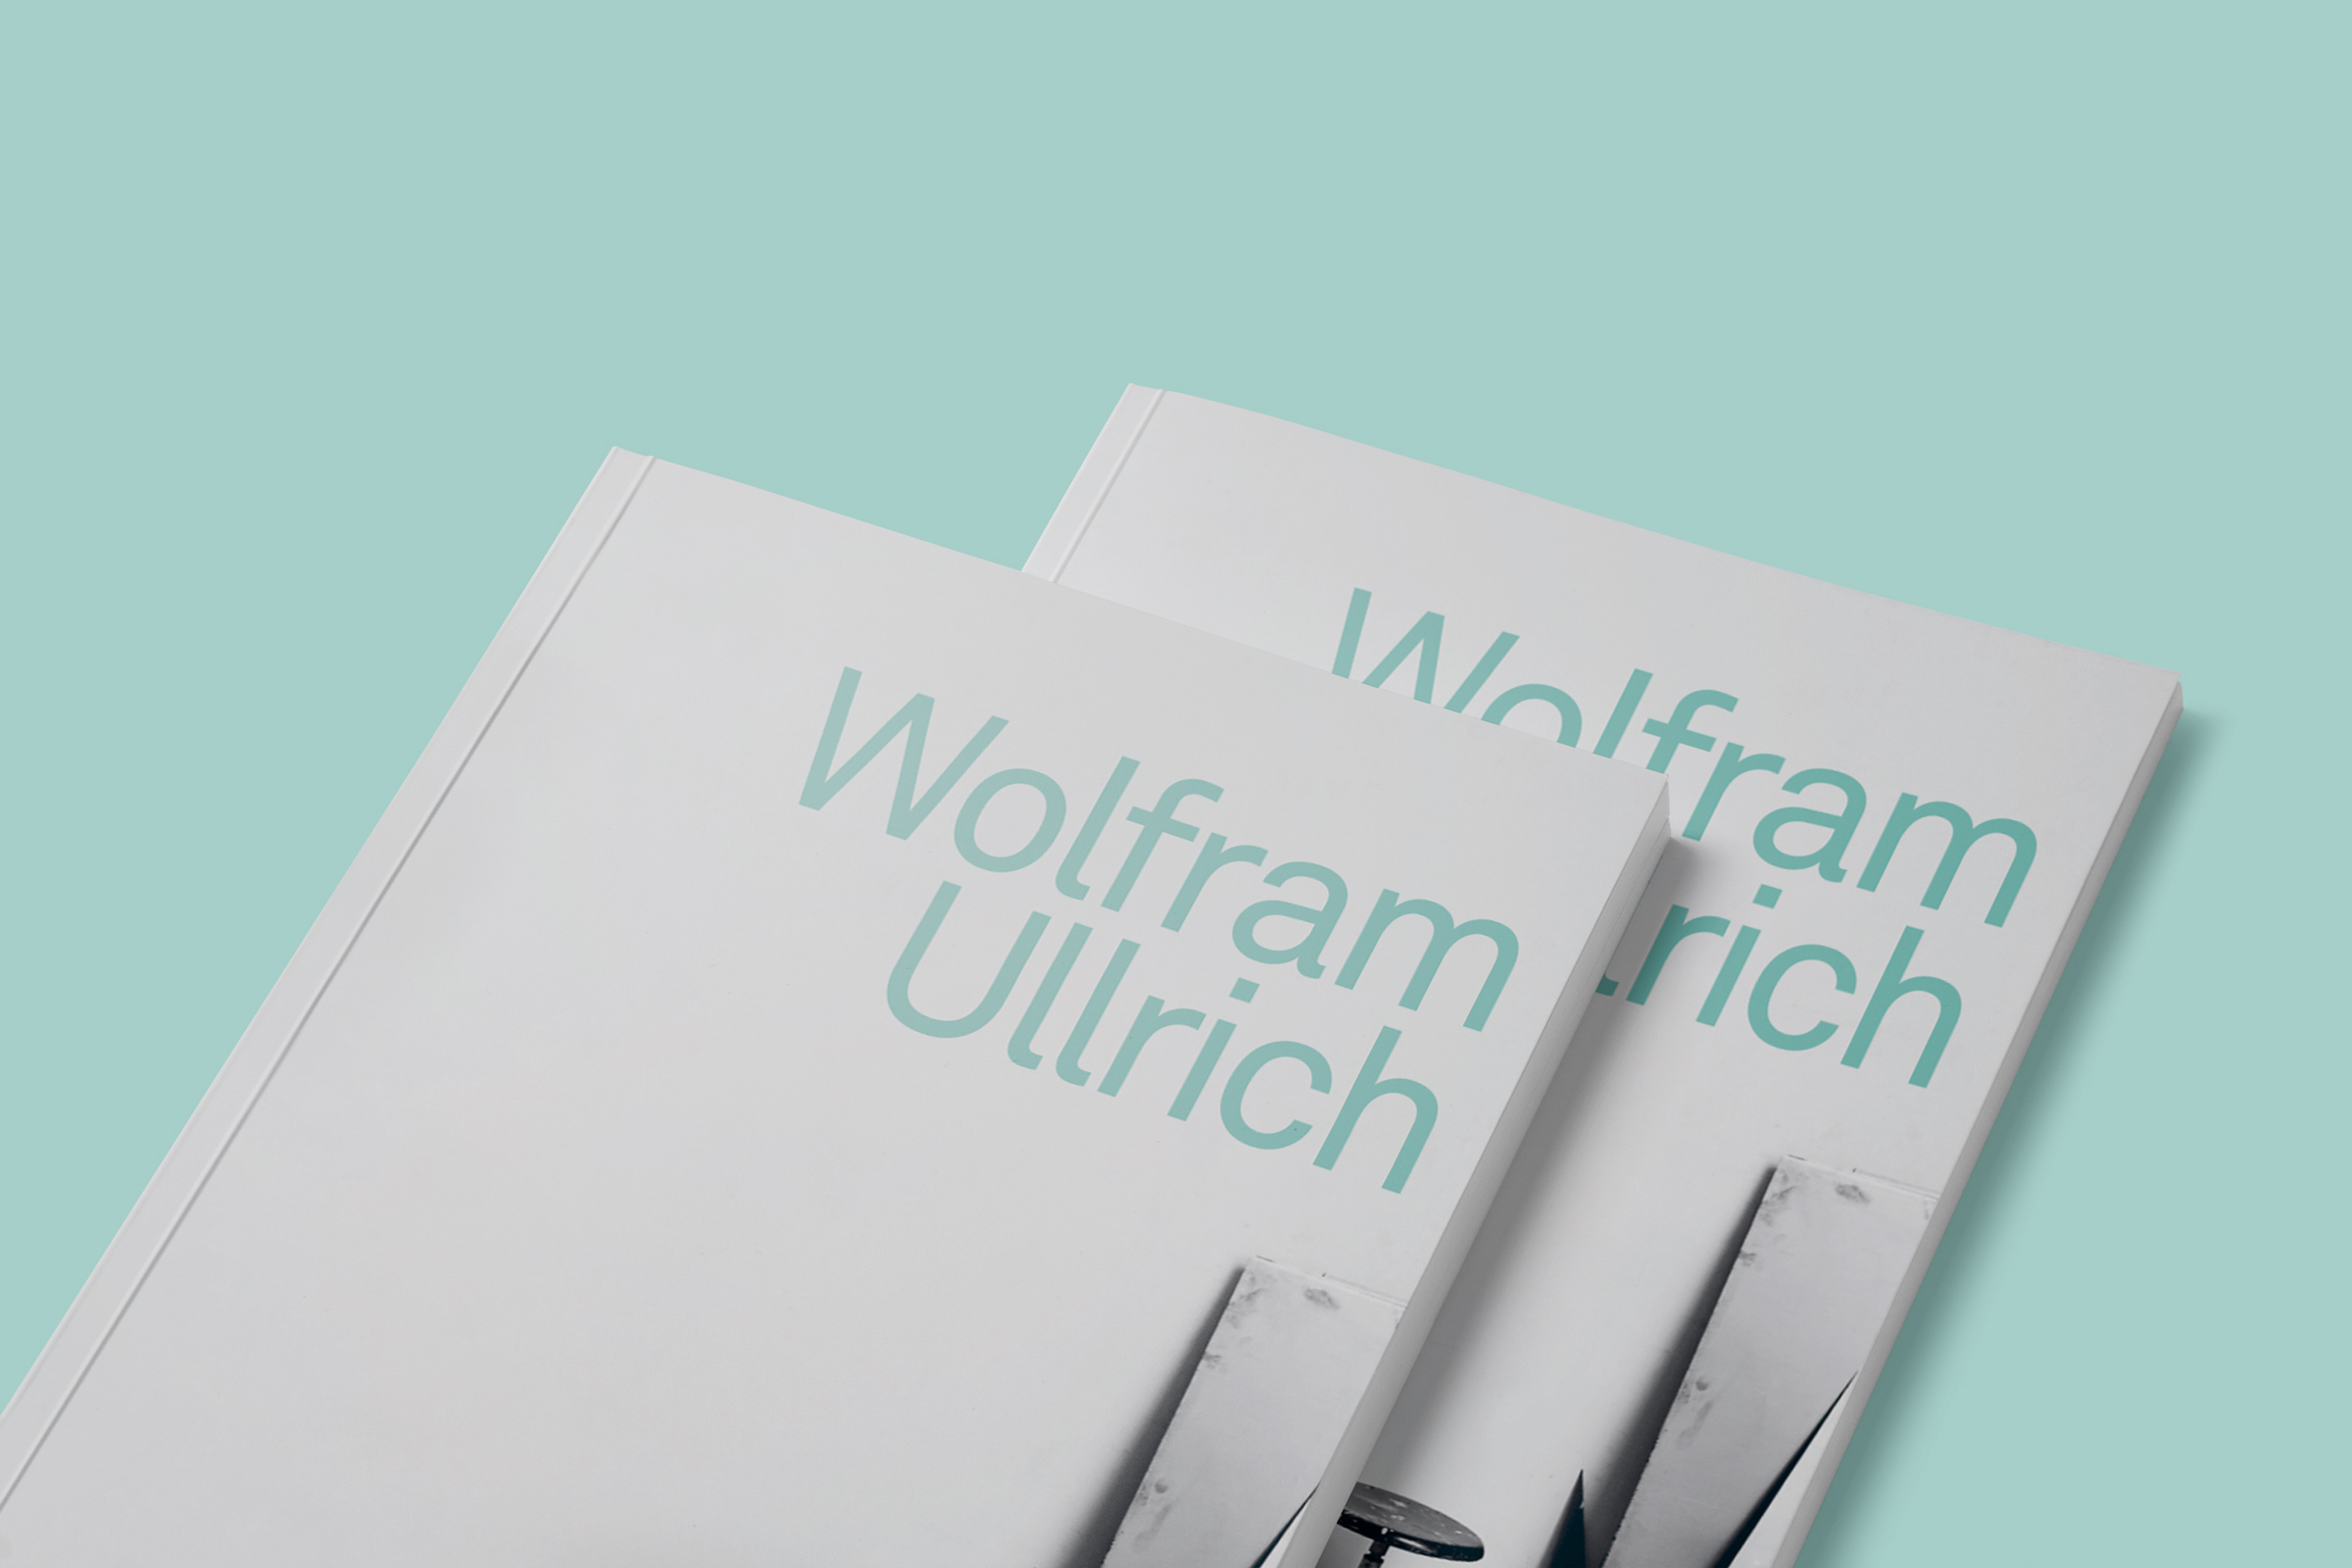 Katalog_Wolfram_Ullrich_Teaser